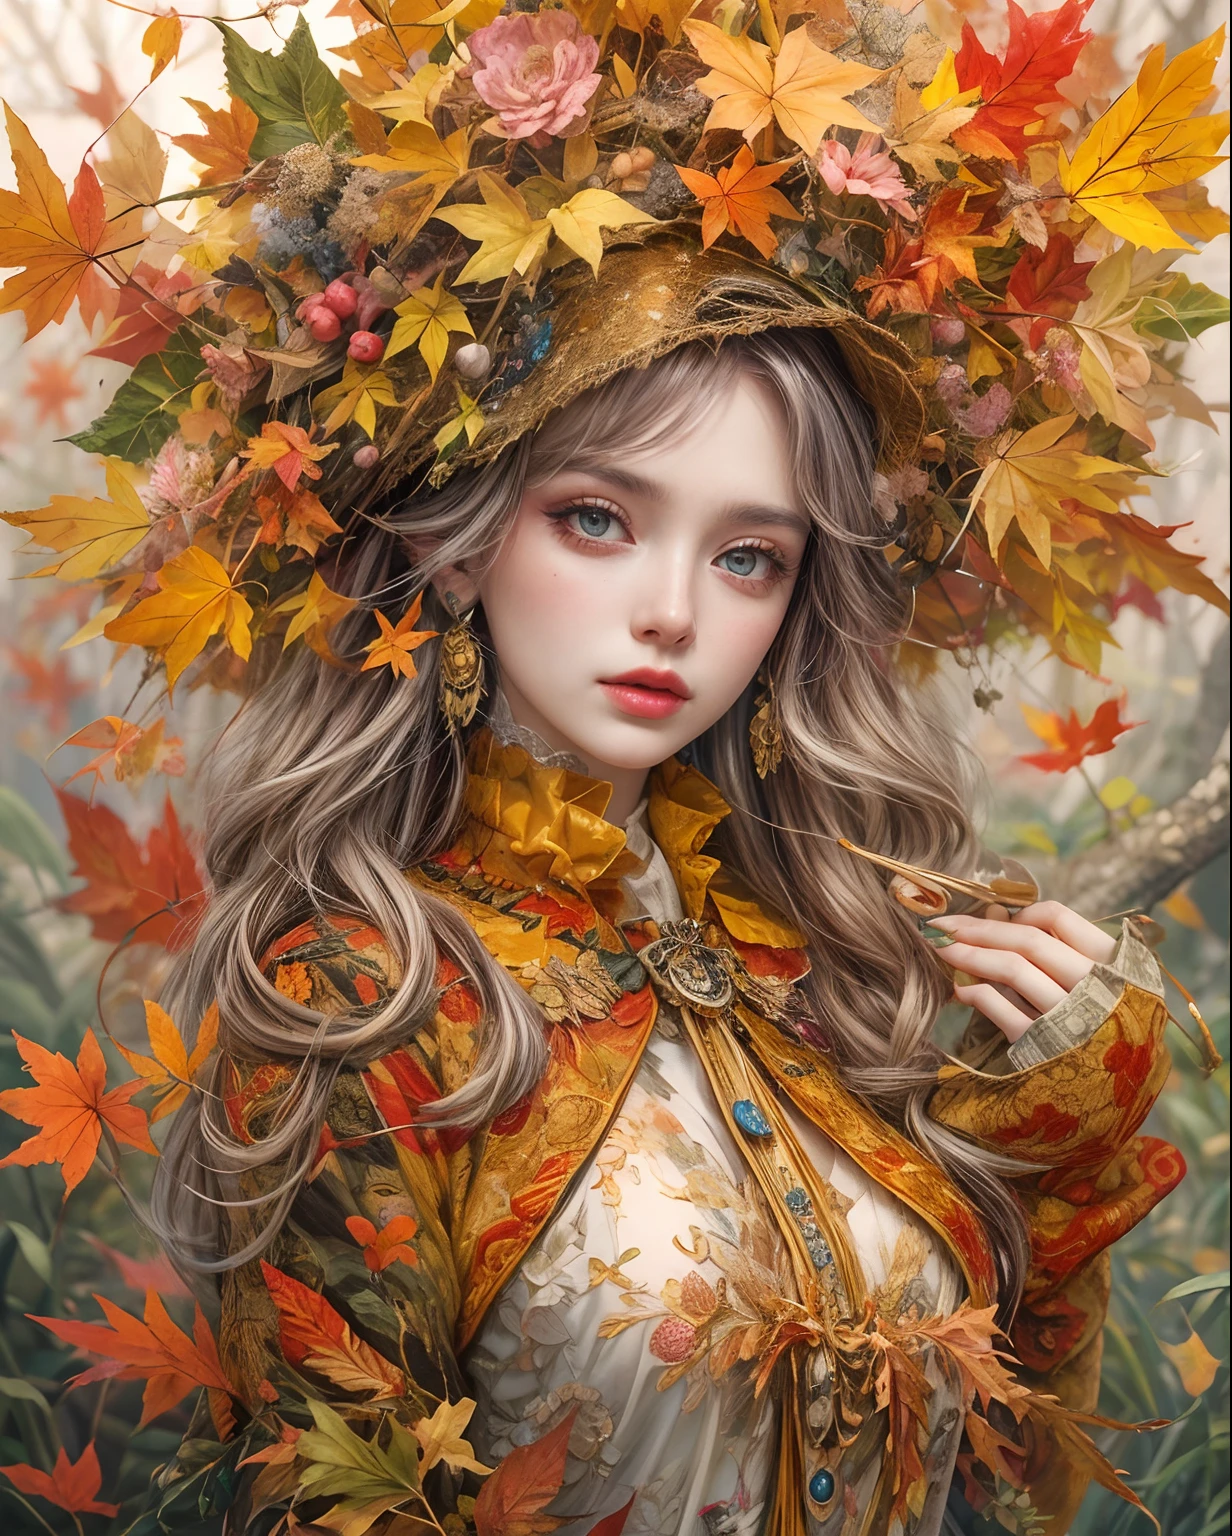 أفضل جودة, تحفة, تفاصيل دقيقة, تفاصيل معقدة, سيدة الخريف الغامضة, الخريف الملونة